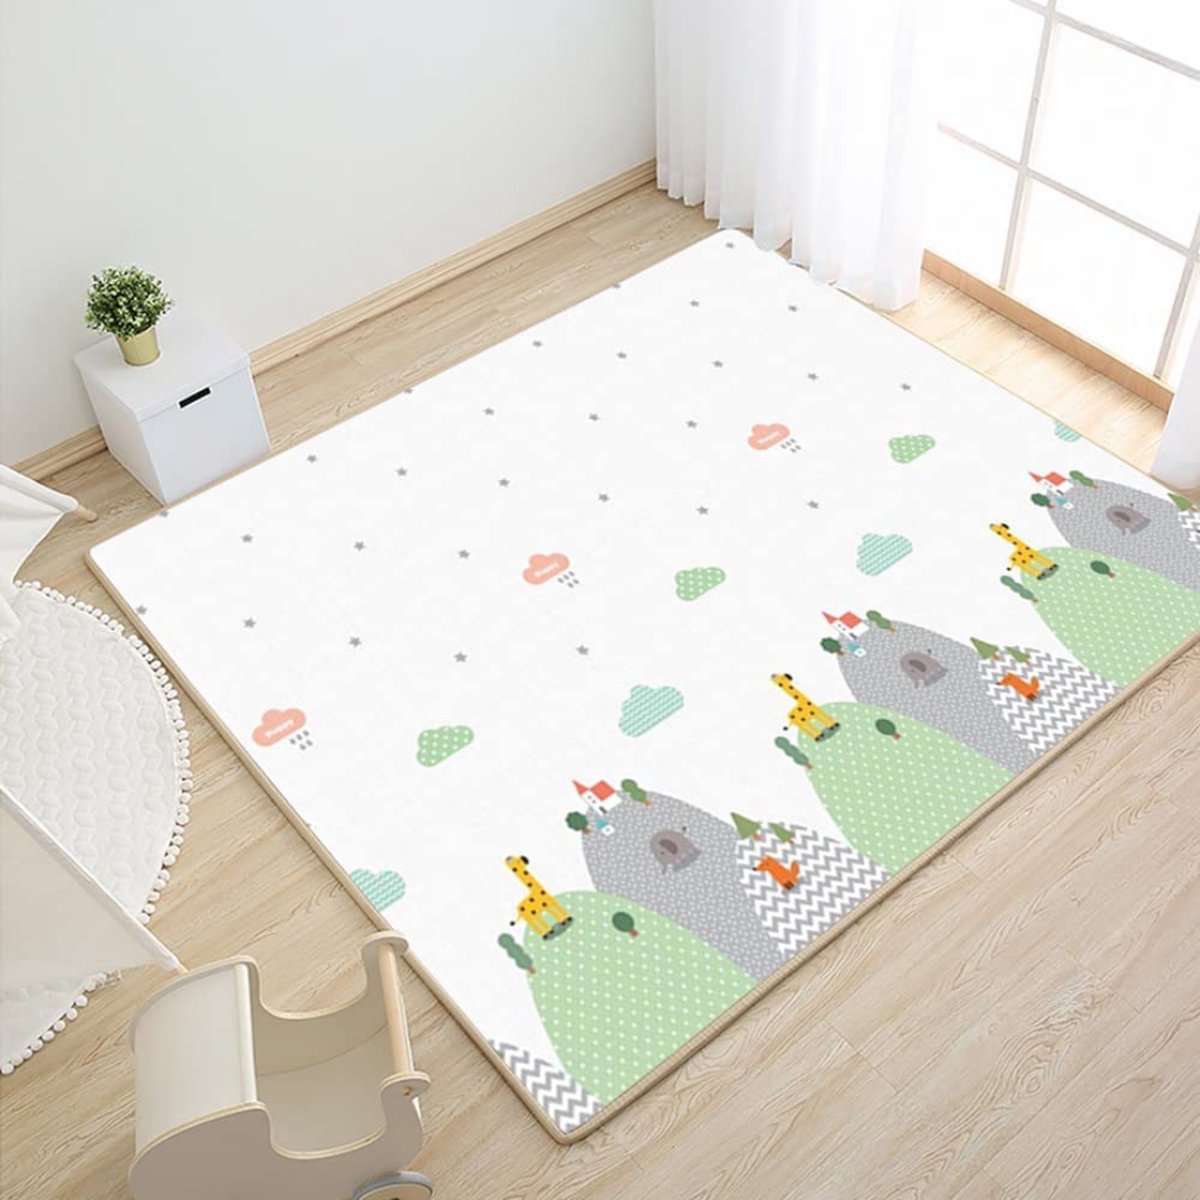 Panbayi Tapis de jeu pliable pour bébé, tapis de jeu en mousse imperméable,  200 x 180 cm, tapis d'éveil pour bébé extra large avec sac, tapis de sol